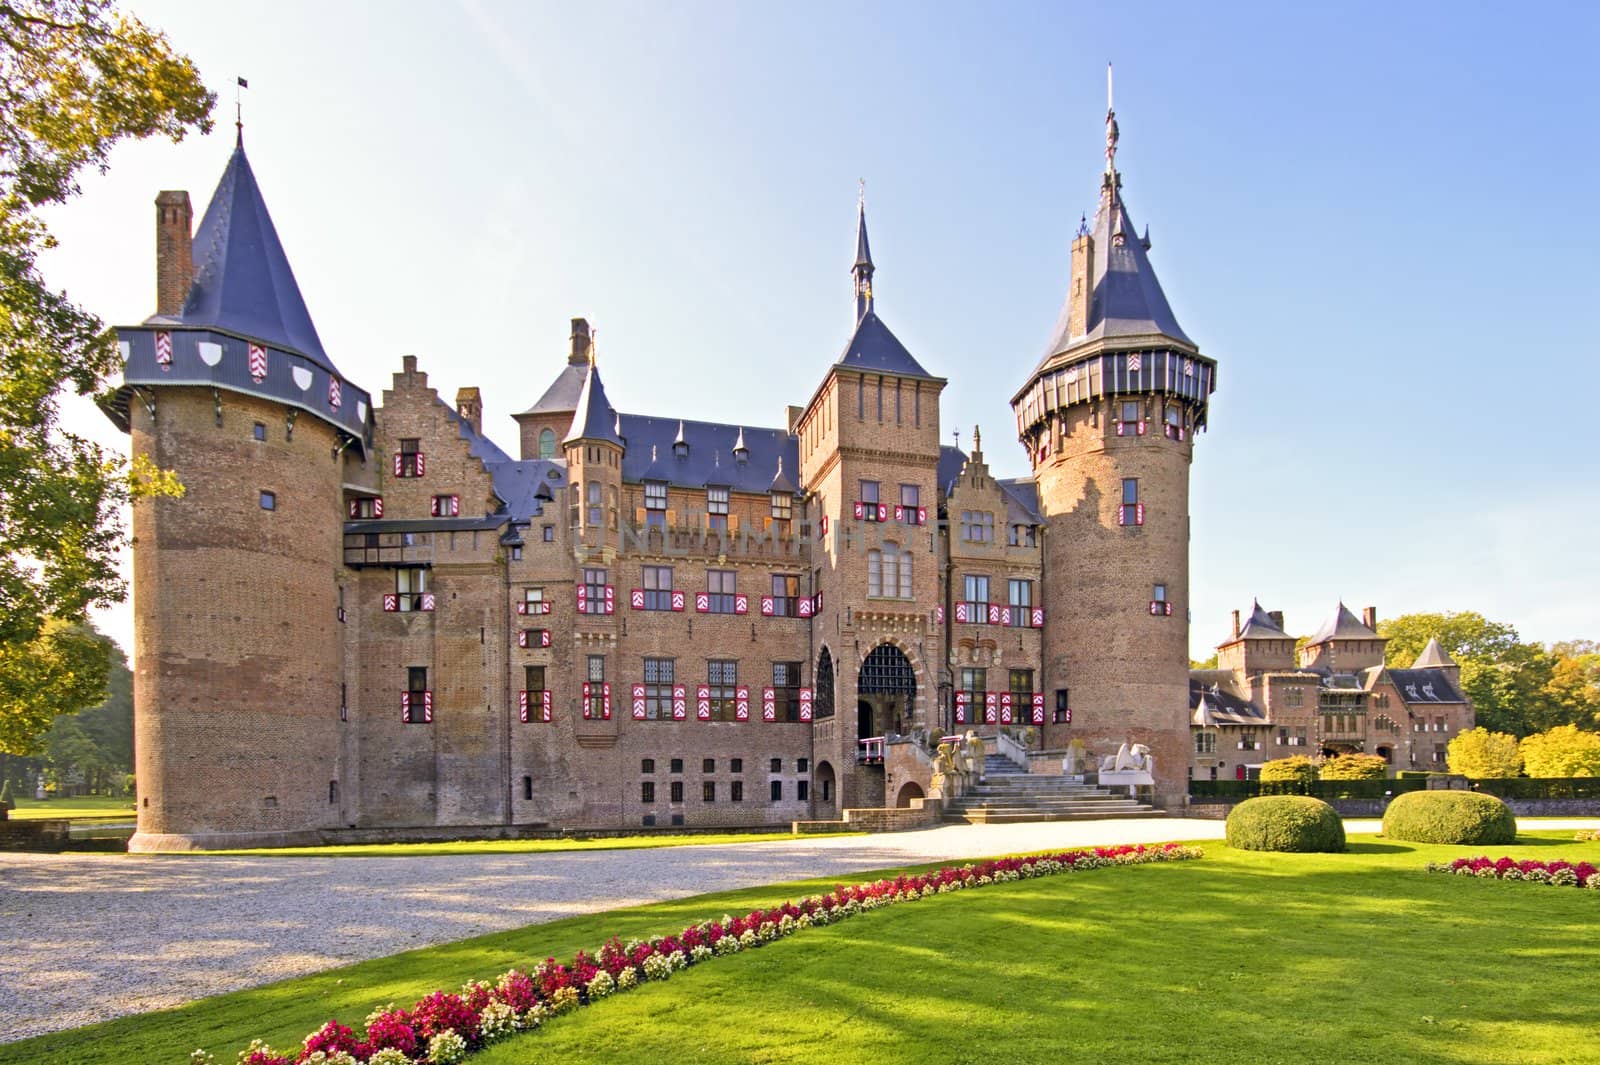 Medieval castle De Haar in the Netherlands by devy